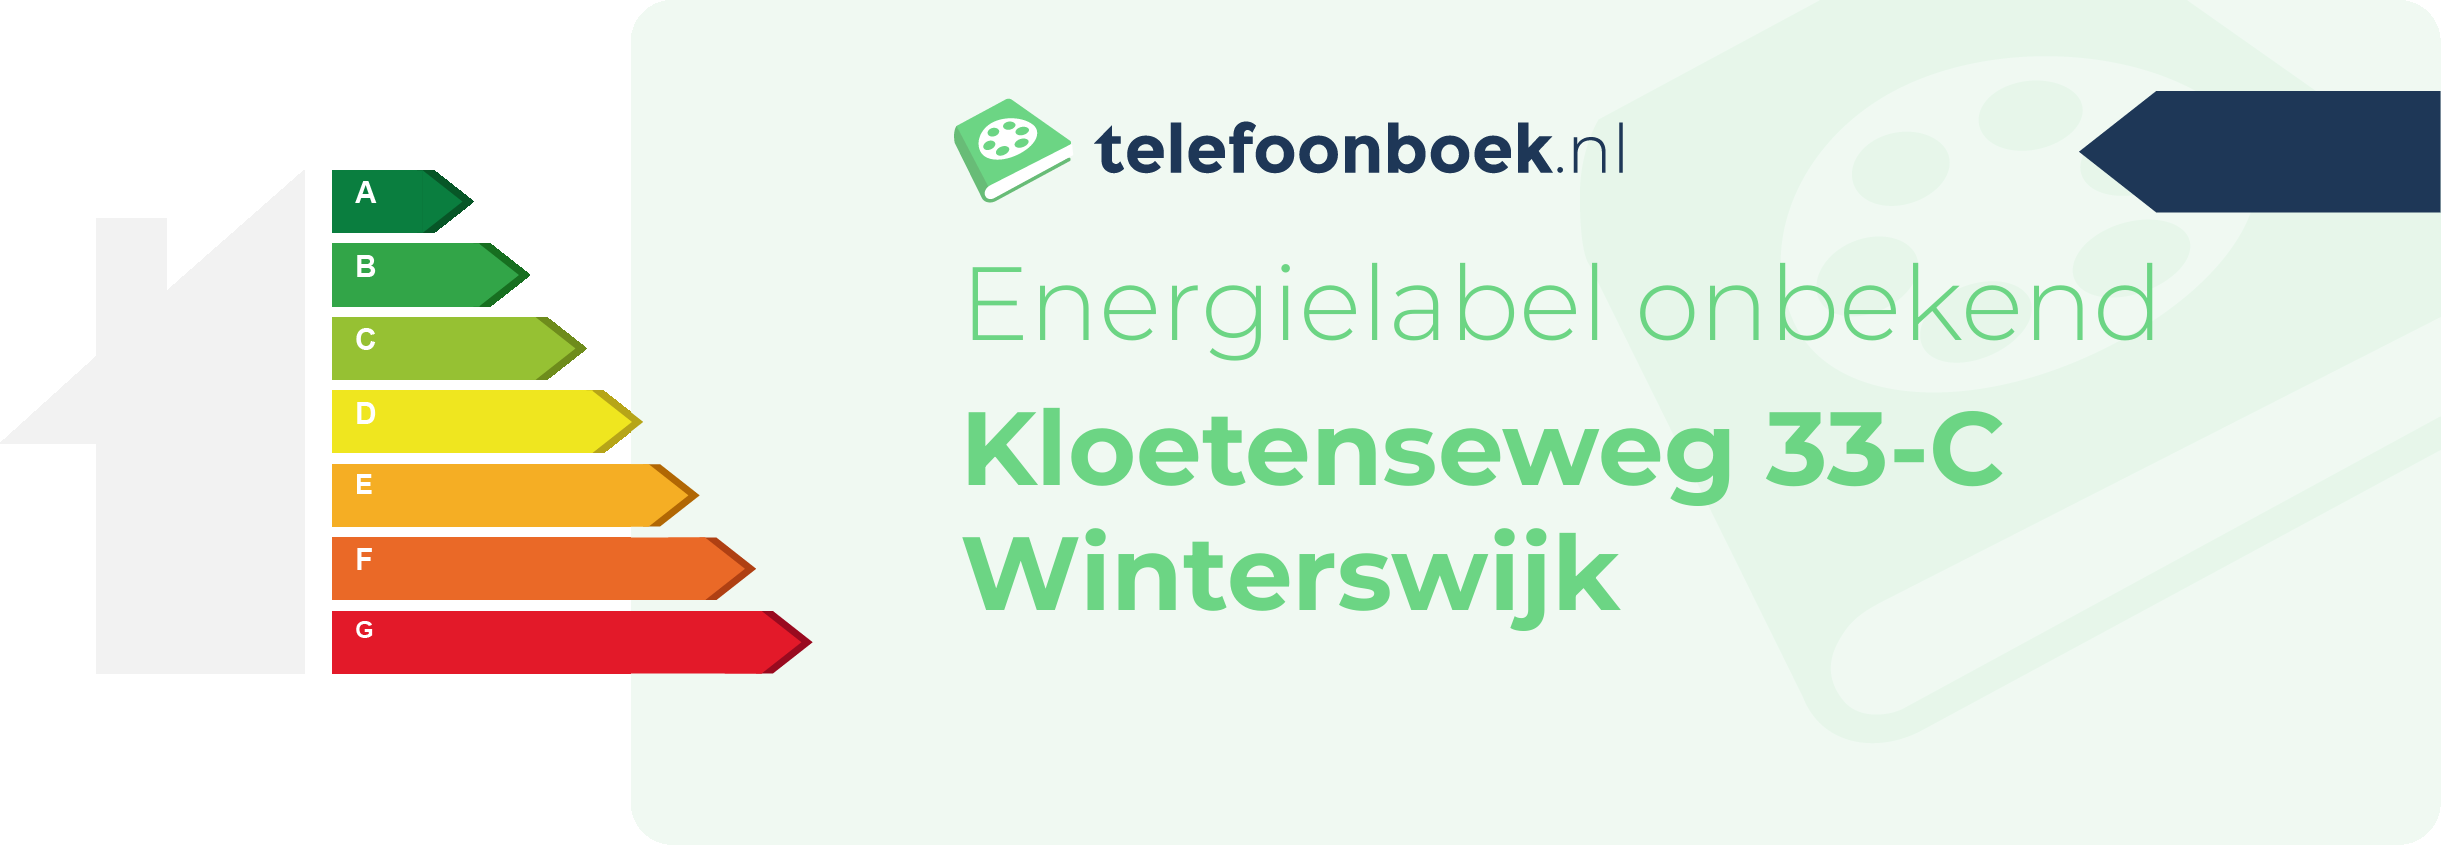 Energielabel Kloetenseweg 33-C Winterswijk